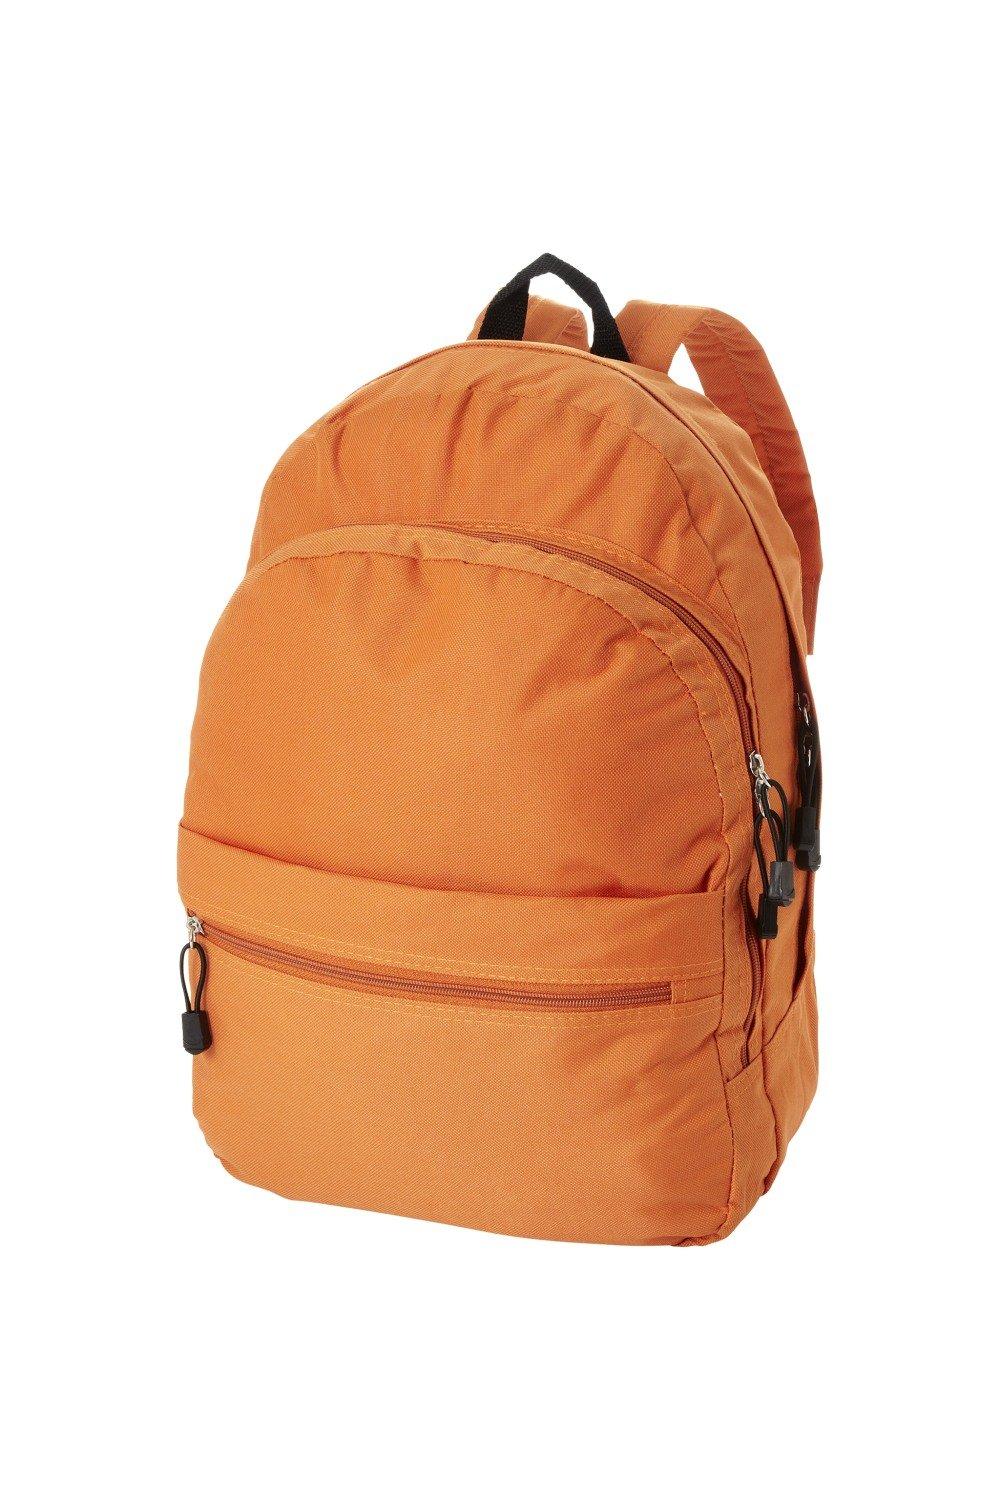 Трендовый рюкзак Bullet, оранжевый рюкзак с карманом единорог 1 шт